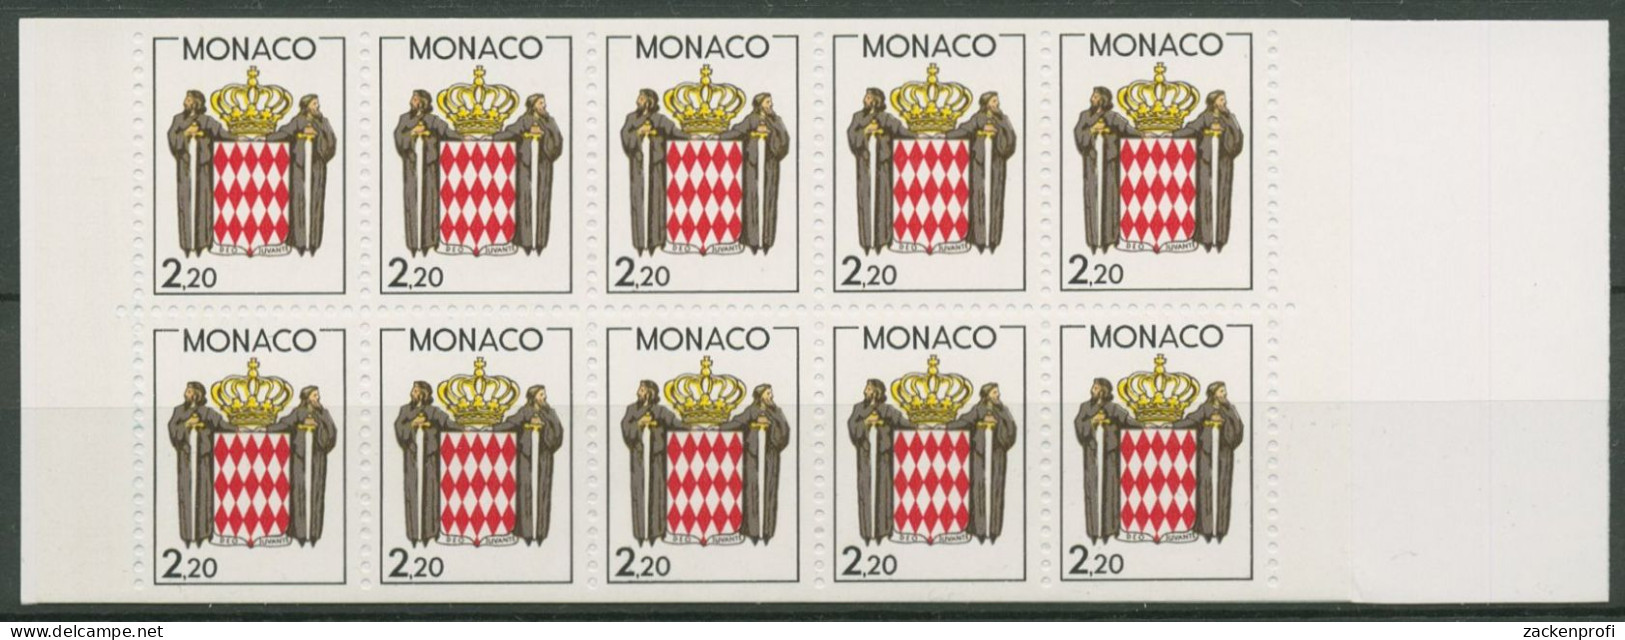 Monaco 1987 Landeswappen Markenheftchen MH 0-1 Postfrisch (C60930) - Markenheftchen